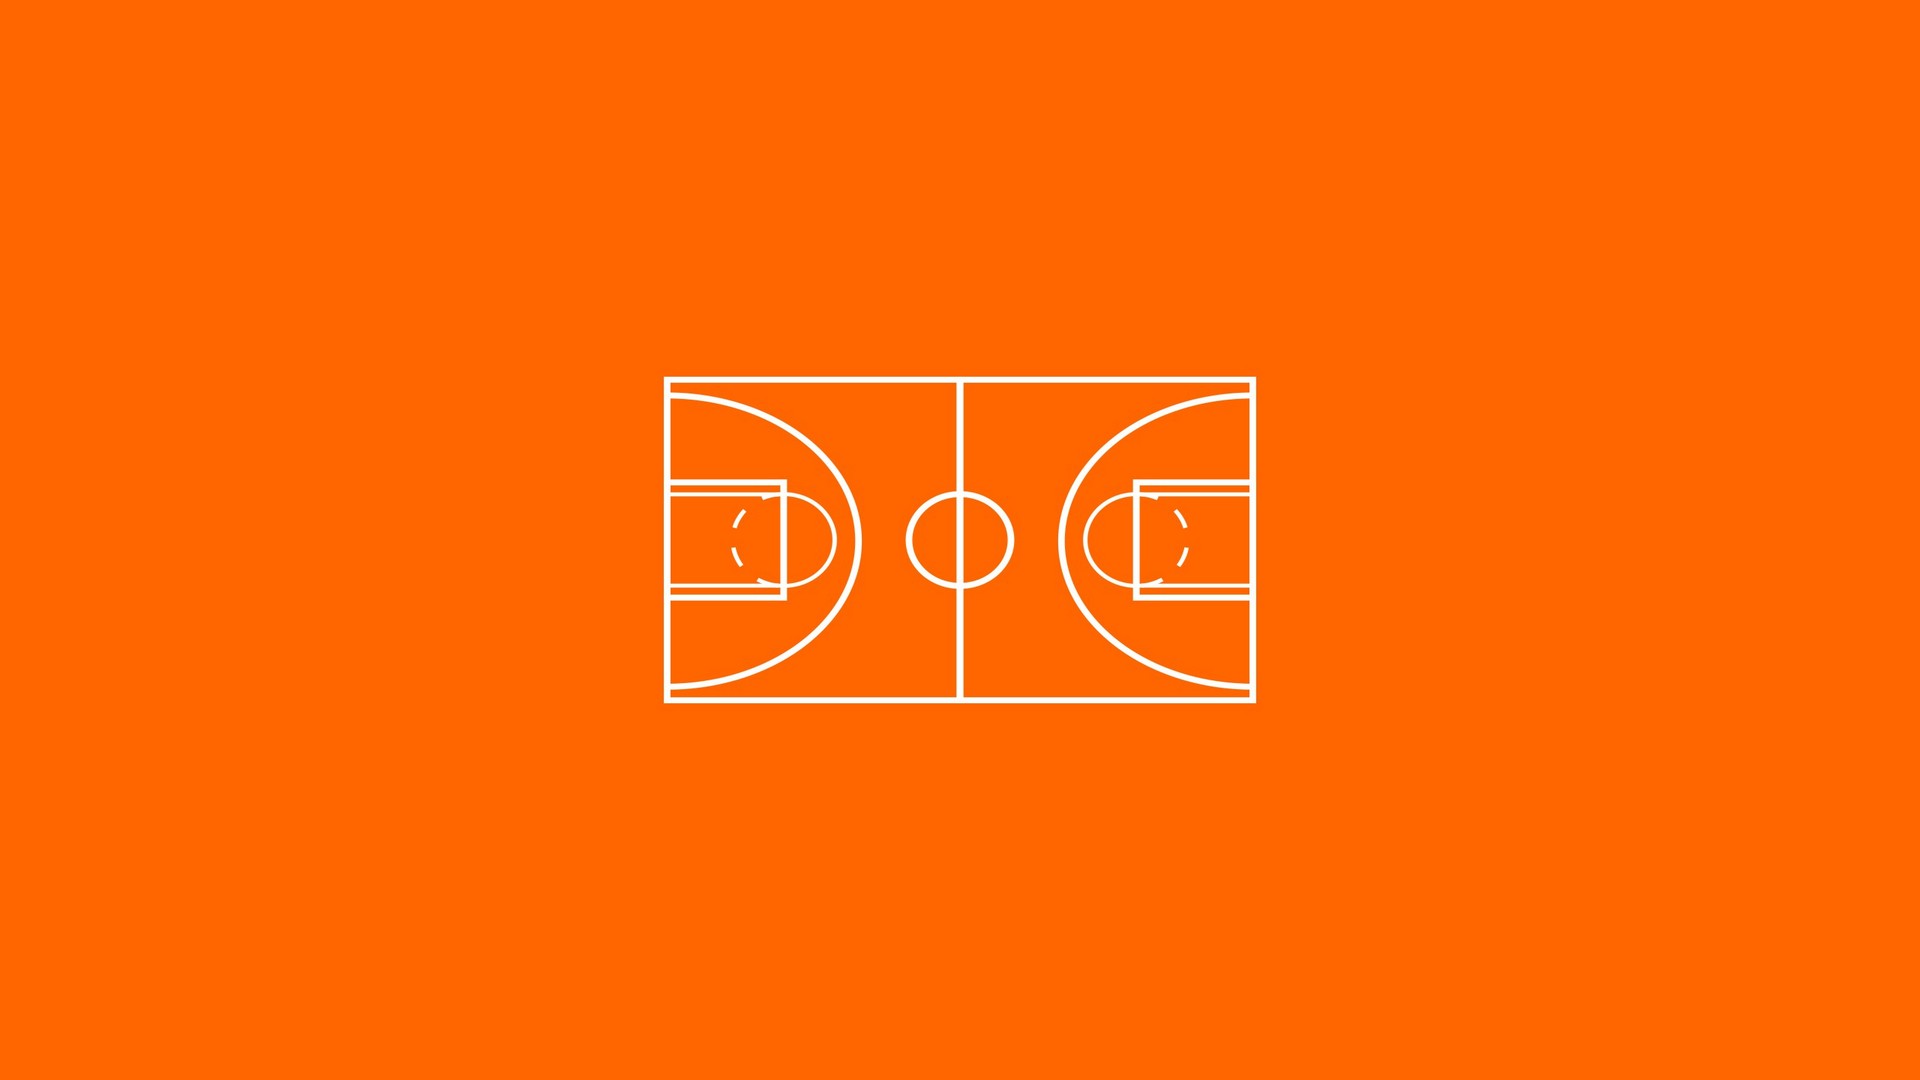 Minimalism Simple Background Orange Orange Background Basketball Basketball Court 1920x1080